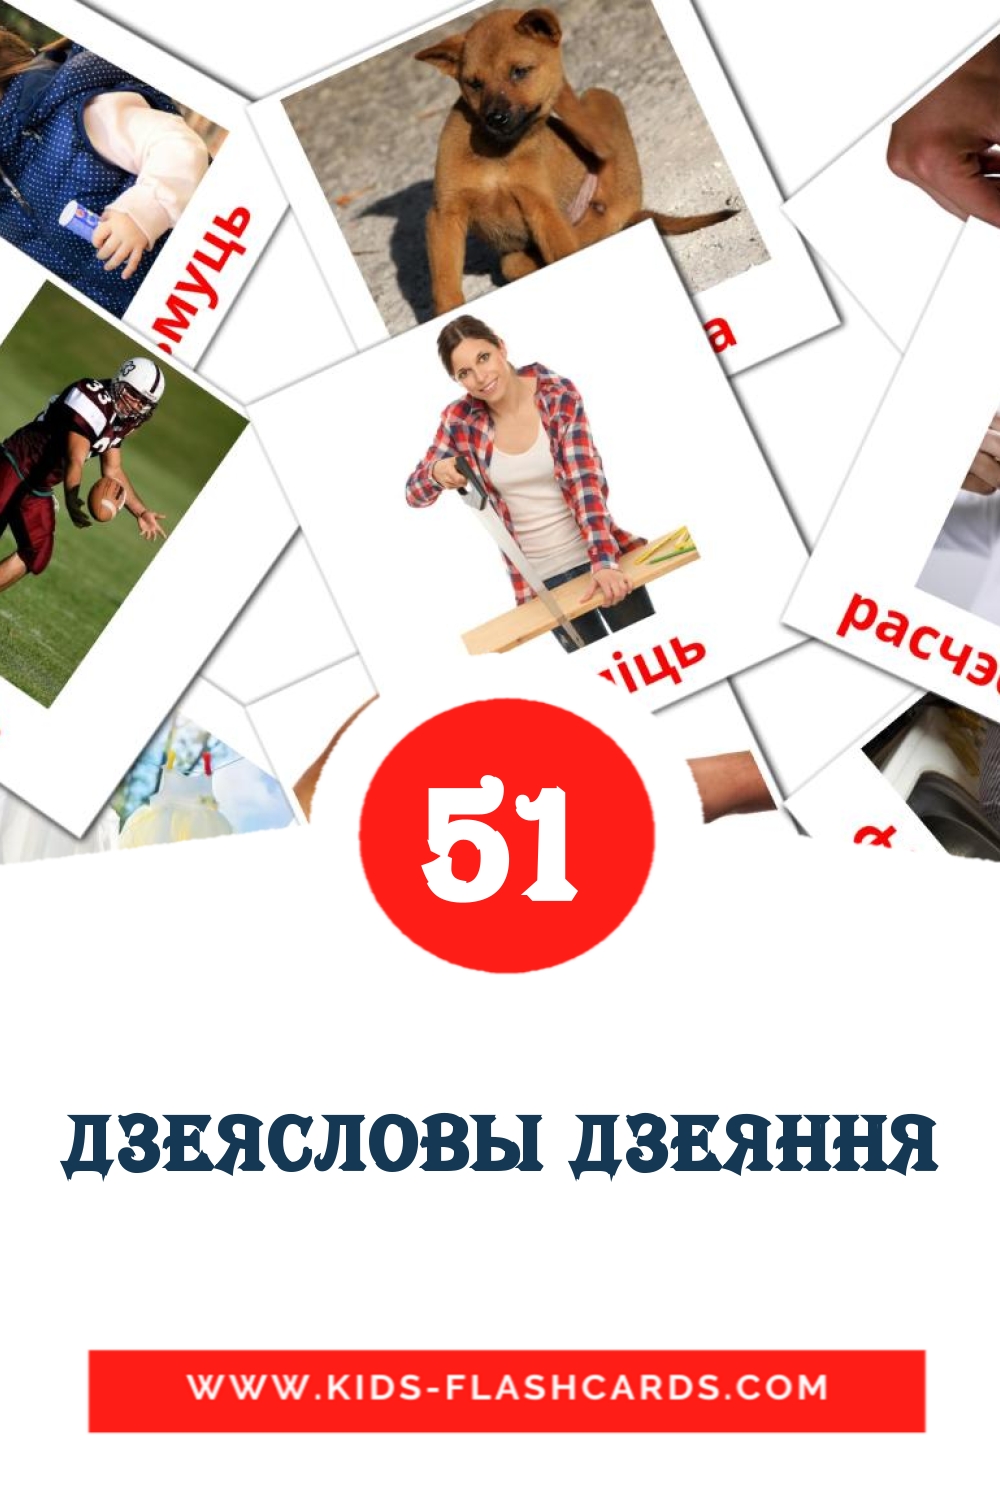 51 дзеясловы дзеяння Bildkarten für den Kindergarten auf Weißrussisch